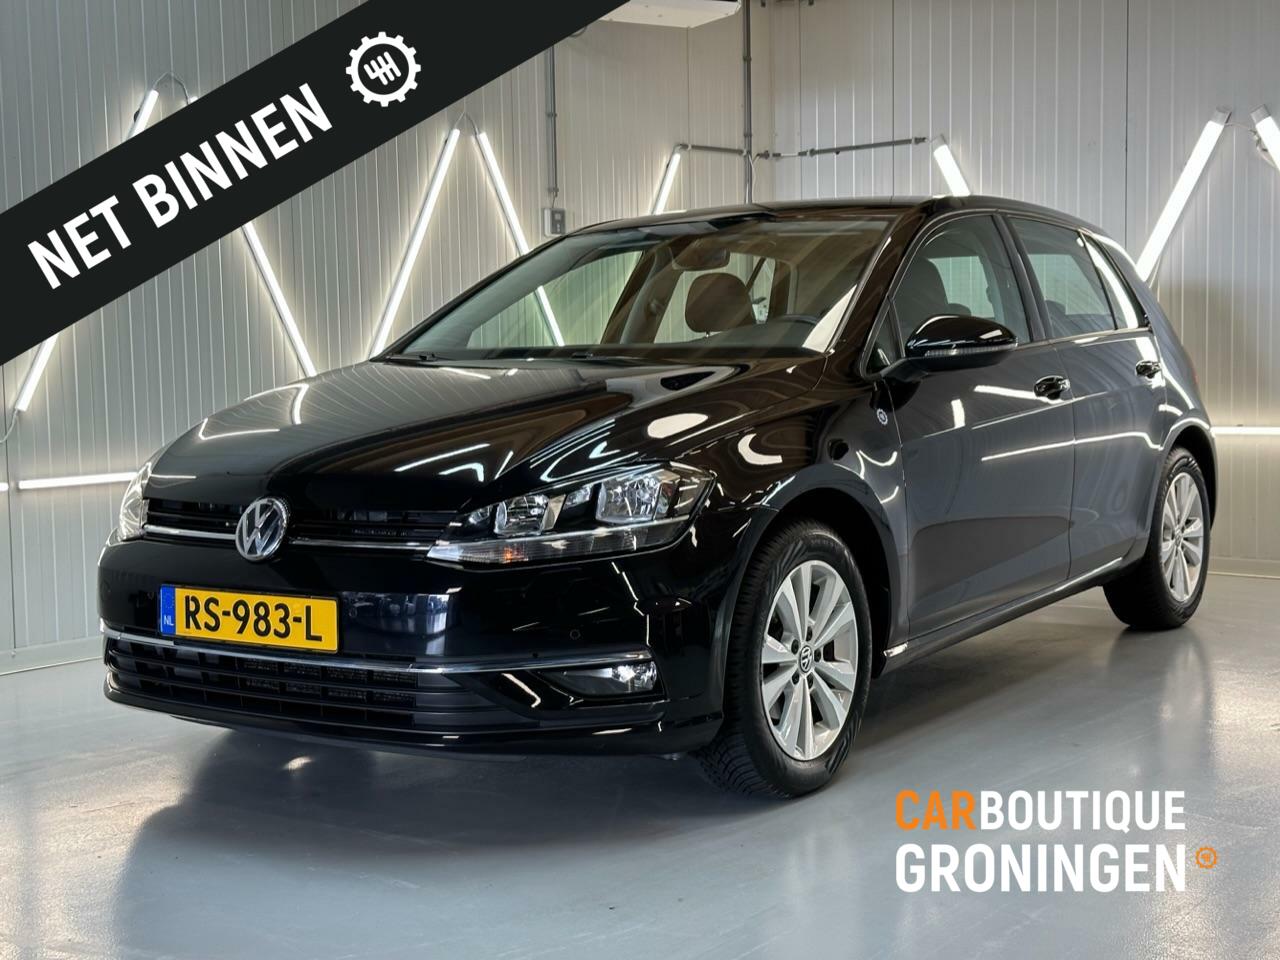 Caroutlet Groningen - Volkswagen Golf 7.5 |1.0 TSI Highline|MULTIMEDIA|CLIMA|PDC